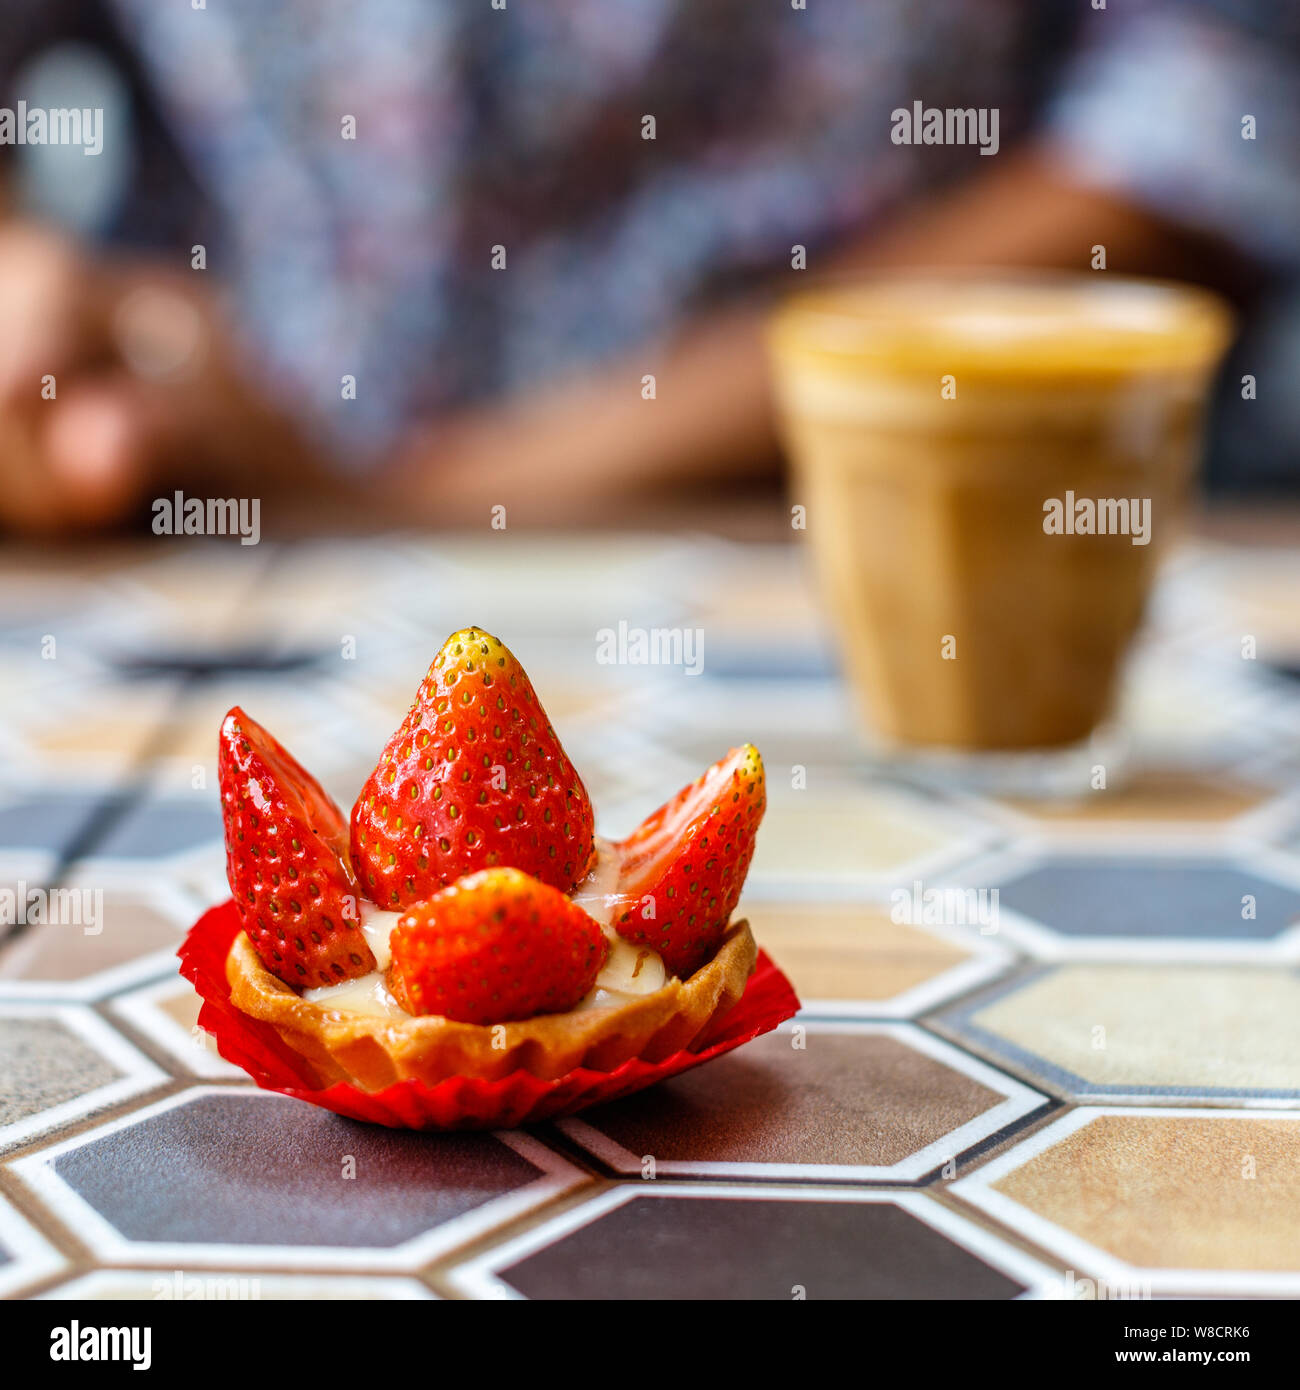 Un verre de café au lait et une tarte aux fraises sur une table en céramique colorée dans un café. Image carrée. Banque D'Images